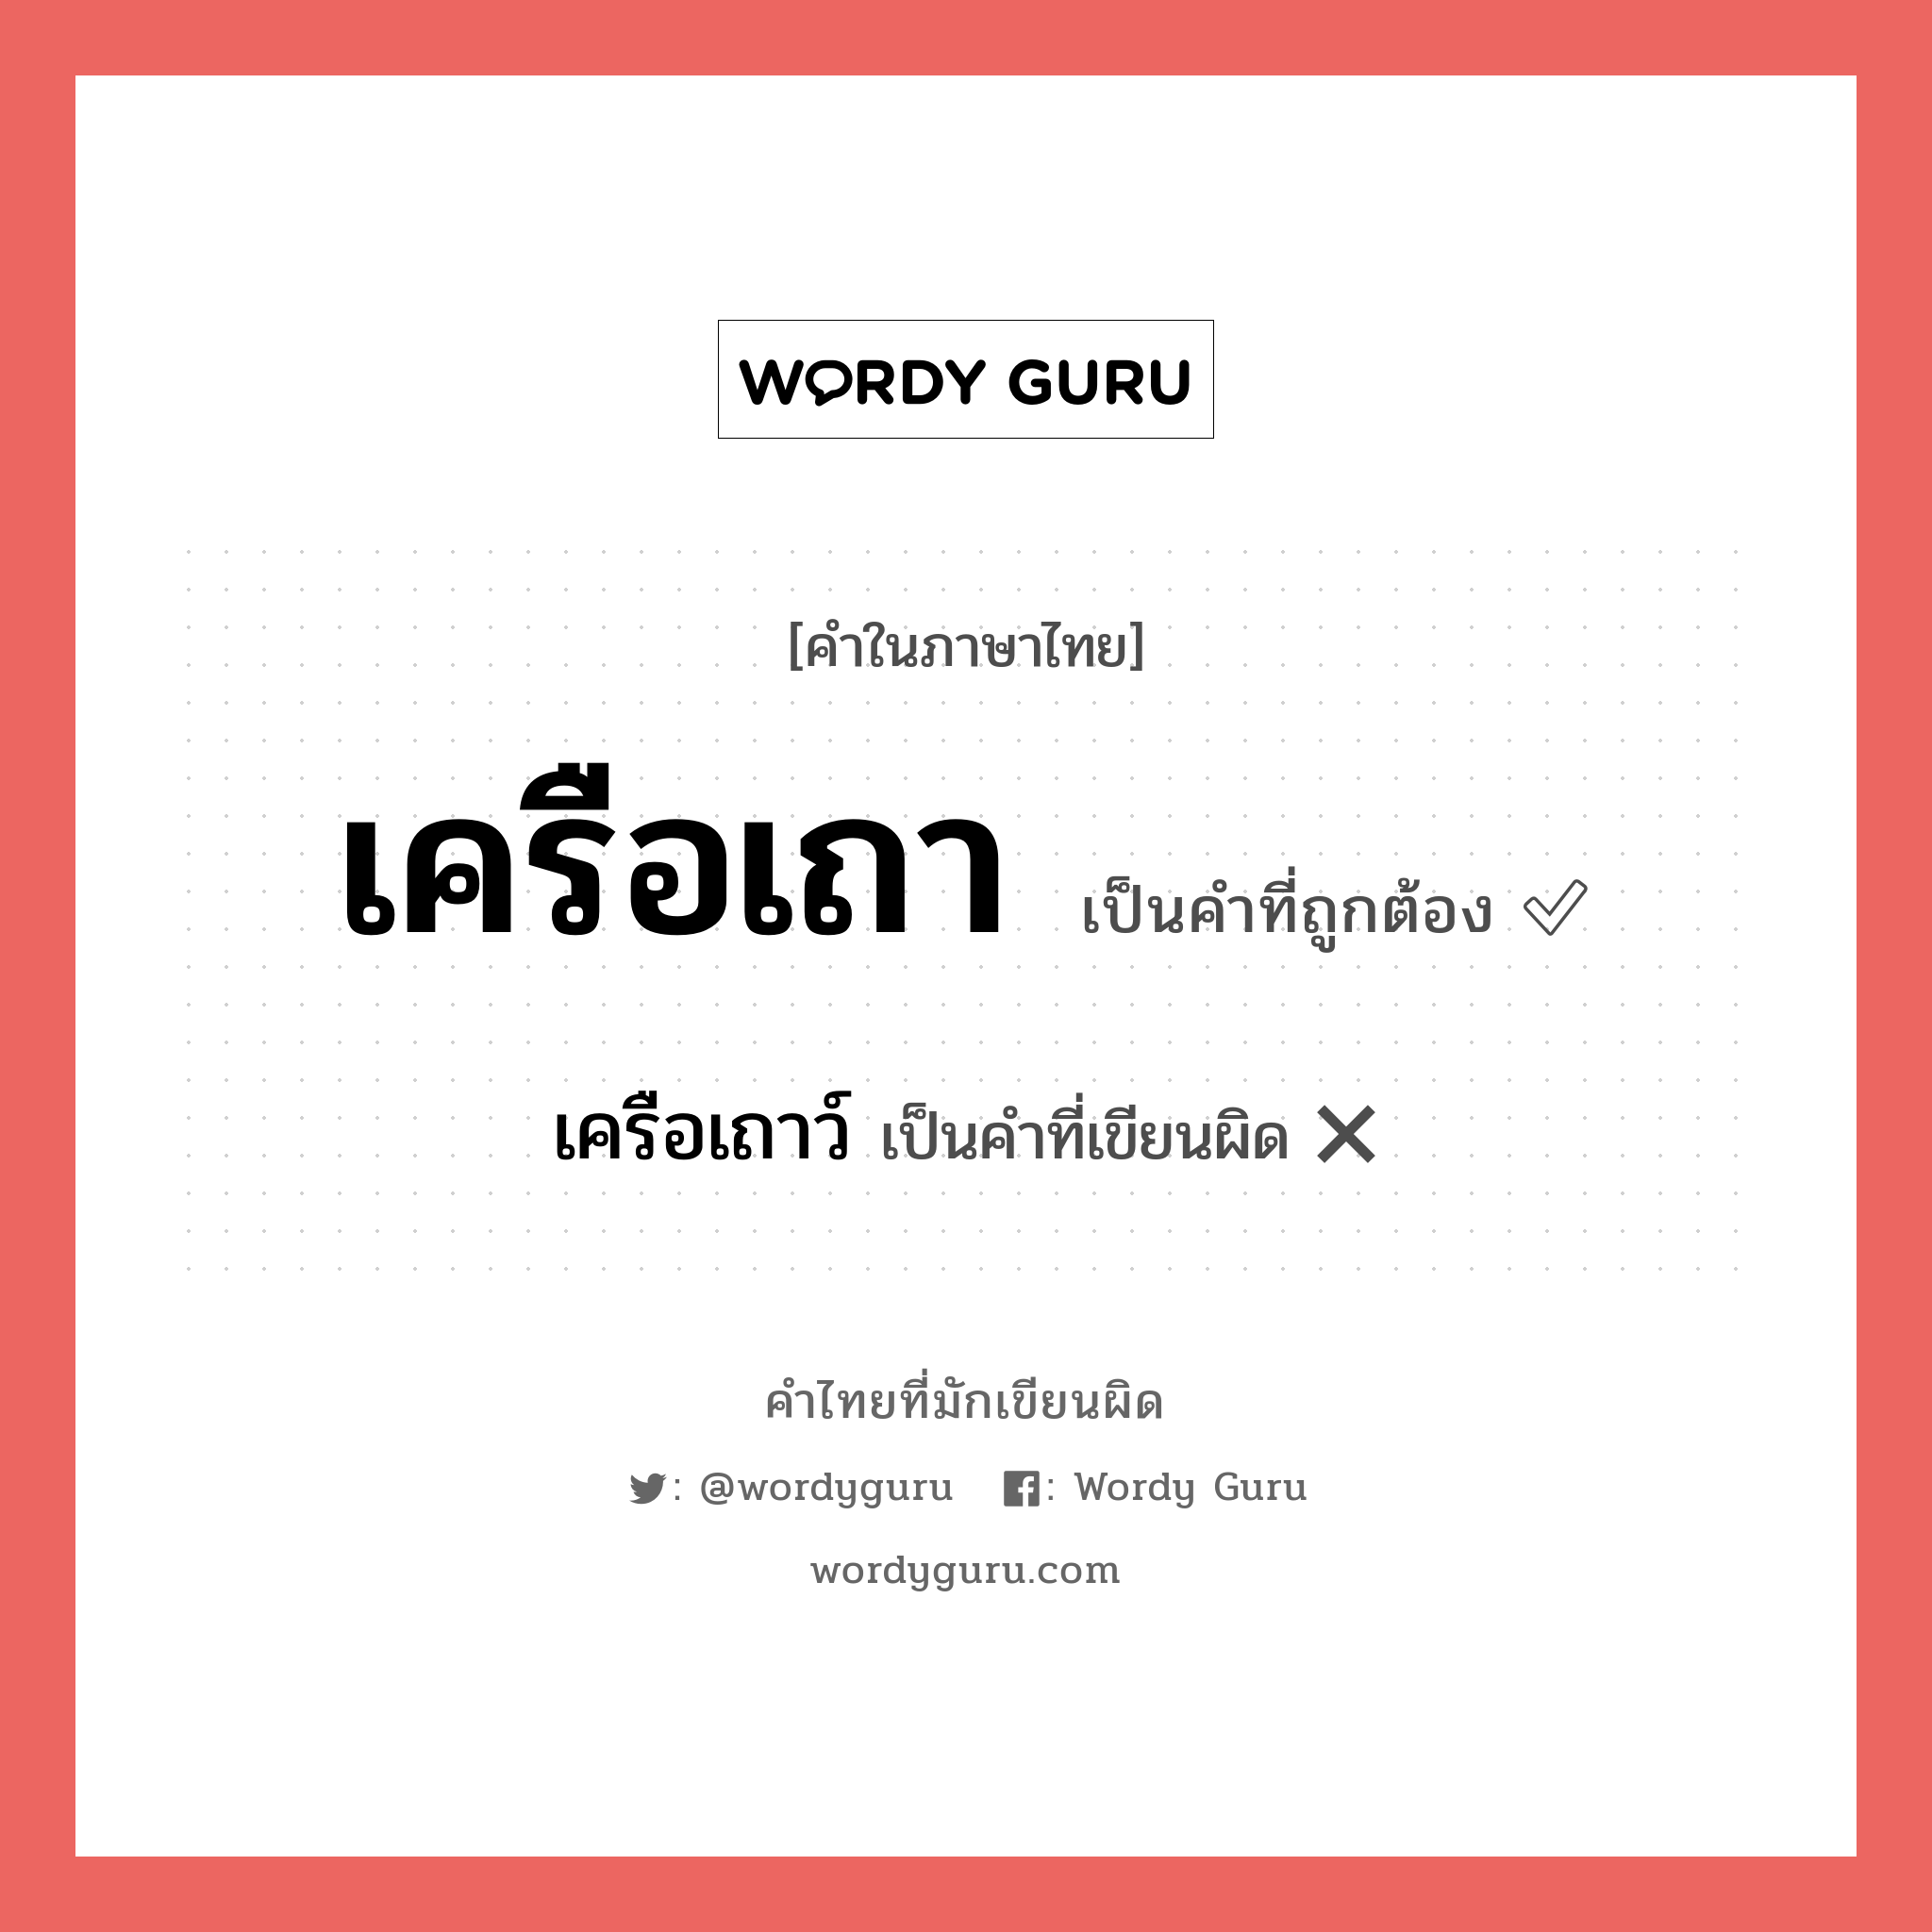 เครือเถา หรือ เครือเถาว์ คำไหนเขียนถูก?, คำในภาษาไทยที่มักเขียนผิด เครือเถา คำที่ผิด ❌ เครือเถาว์